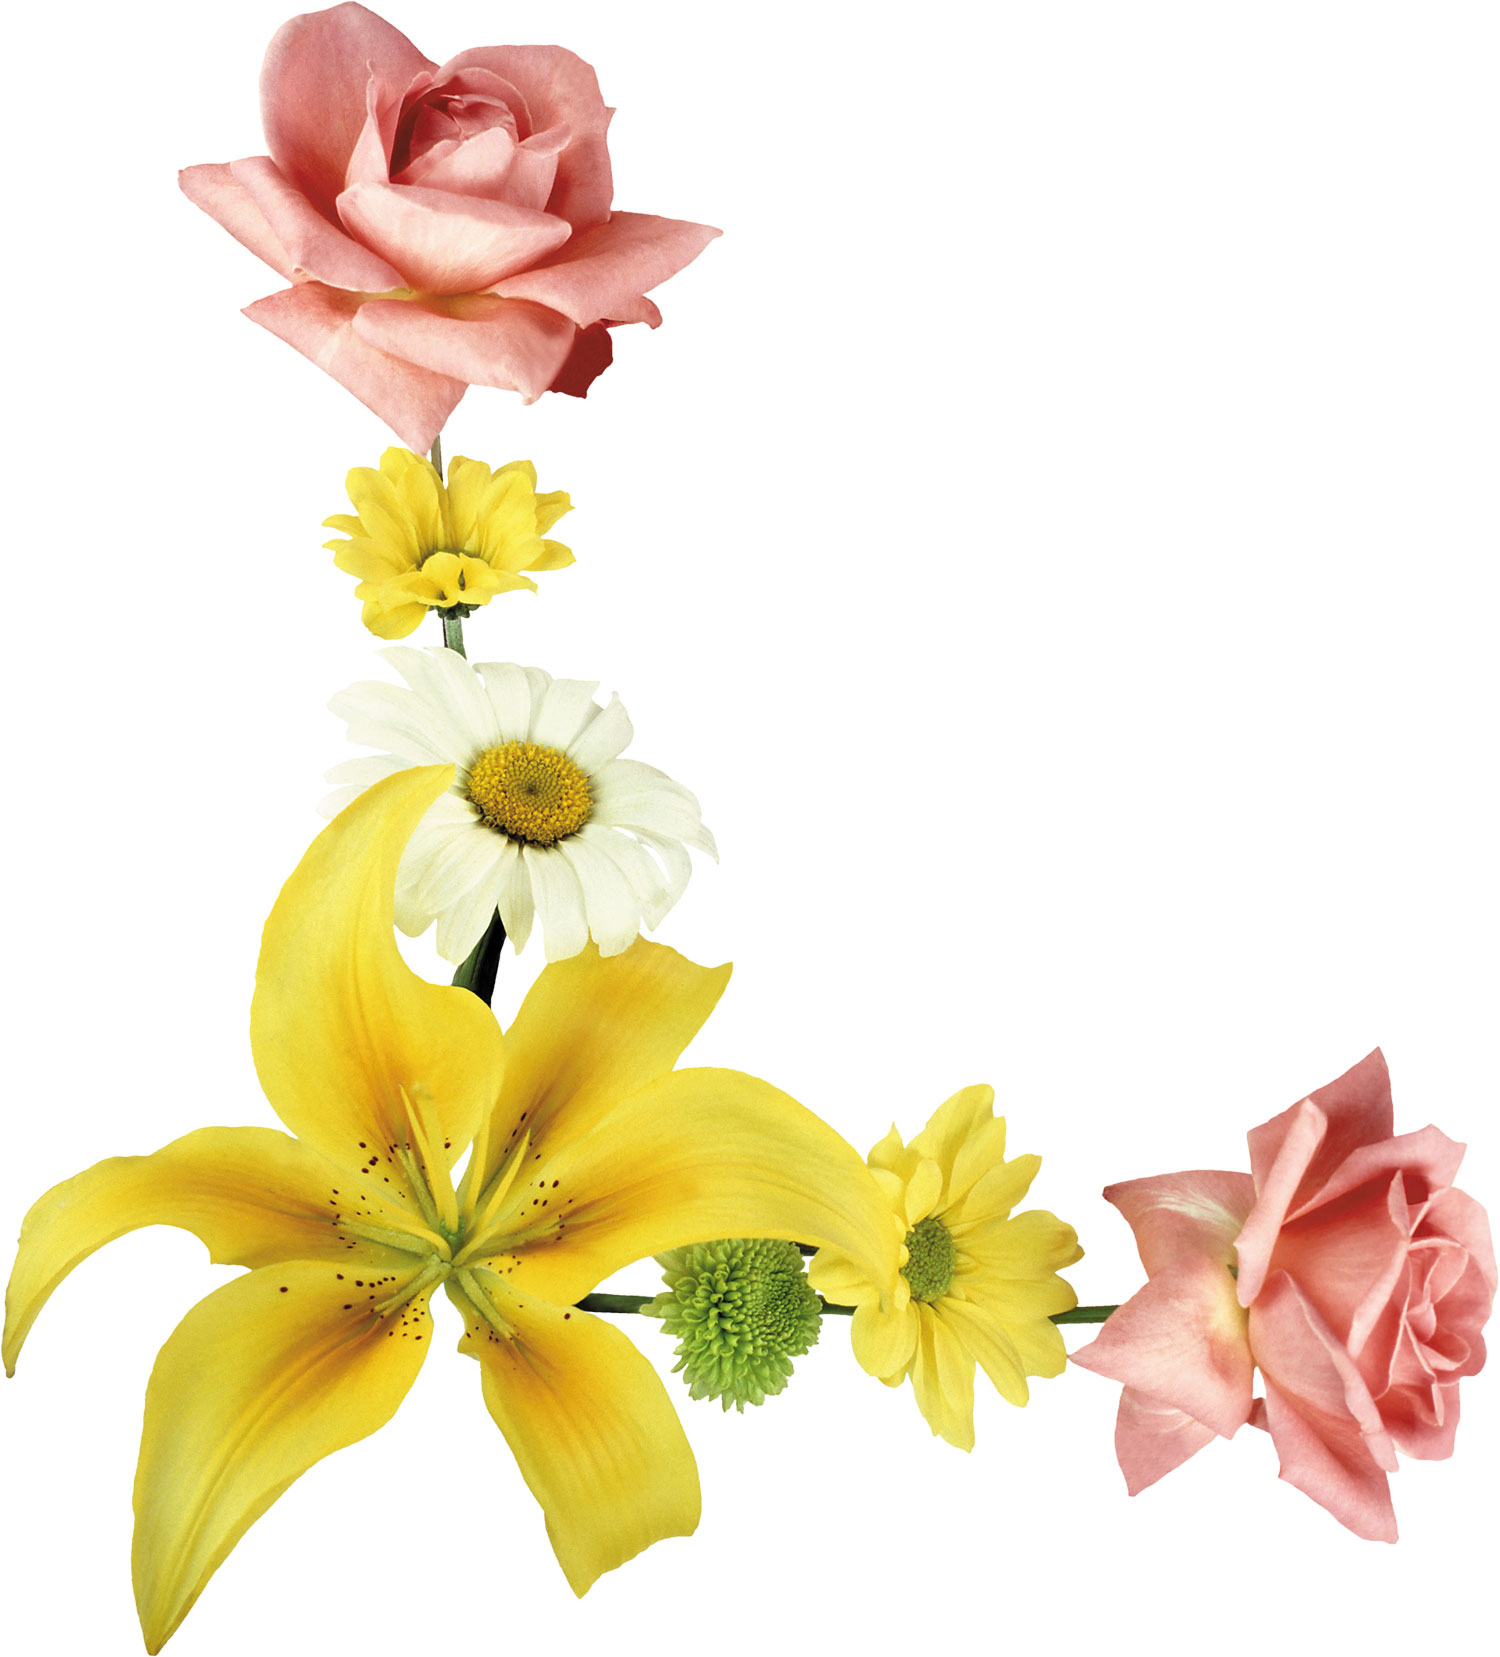 百合 ゆり の花の写真 画像 フリー素材 No 330 ゆり バラ 白黄ピンク